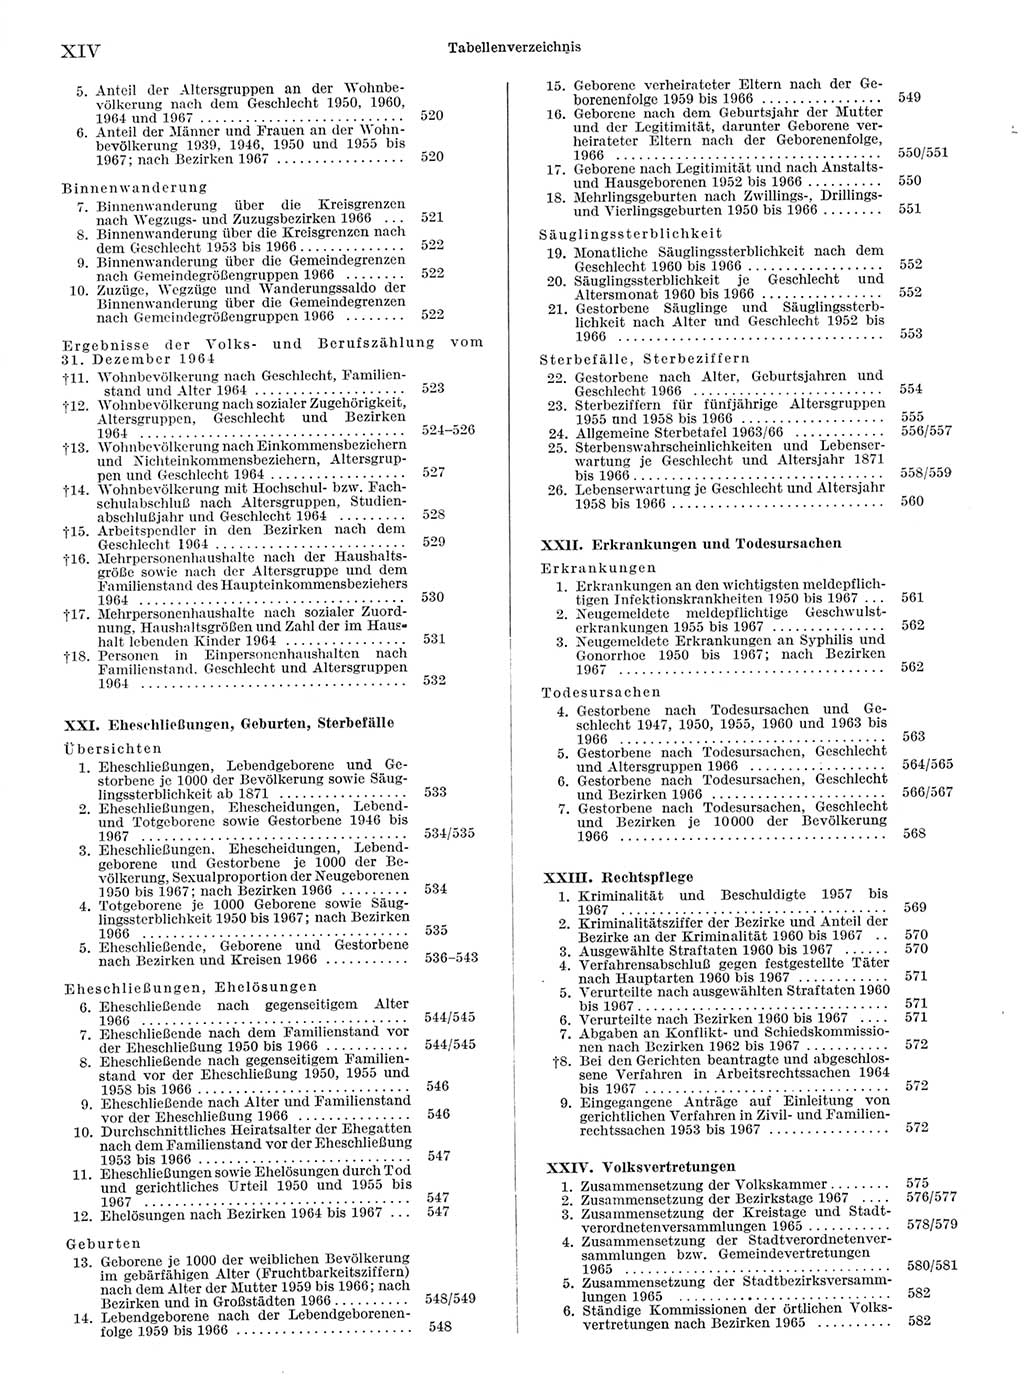 Statistisches Jahrbuch der Deutschen Demokratischen Republik (DDR) 1968, Seite 14 (Stat. Jb. DDR 1968, S. 14)